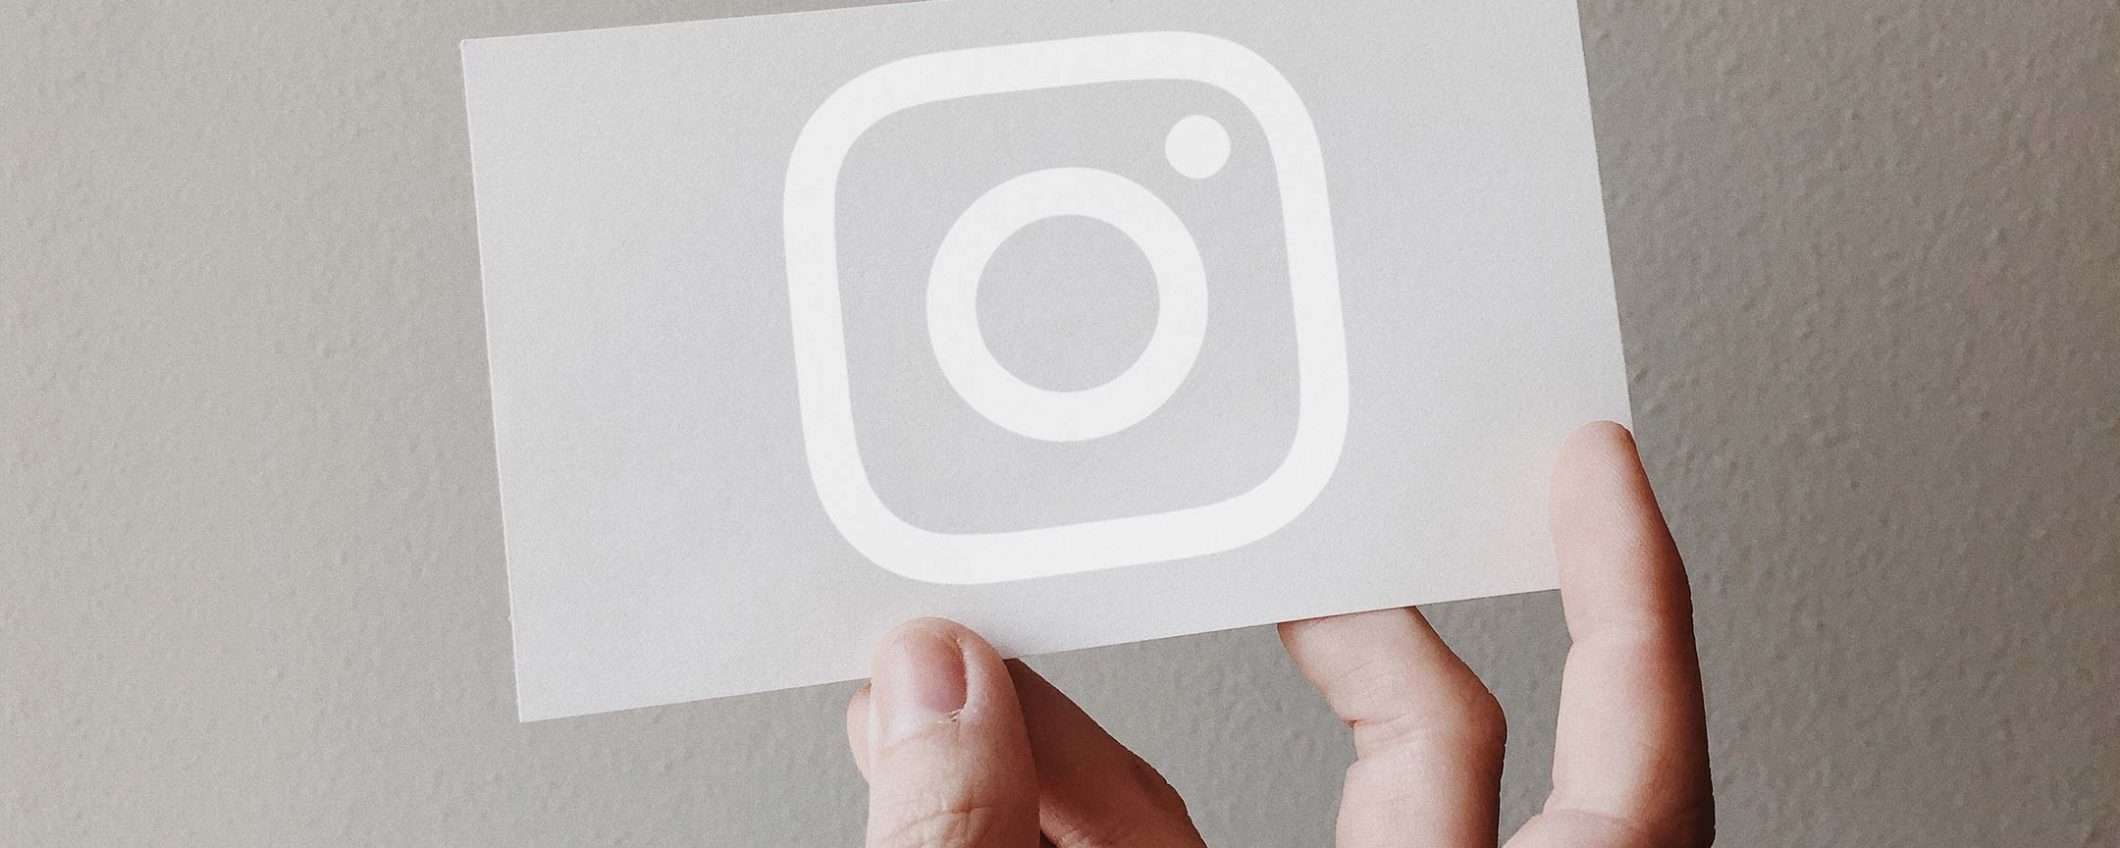 Account Instagram is the new biglietto da visita?